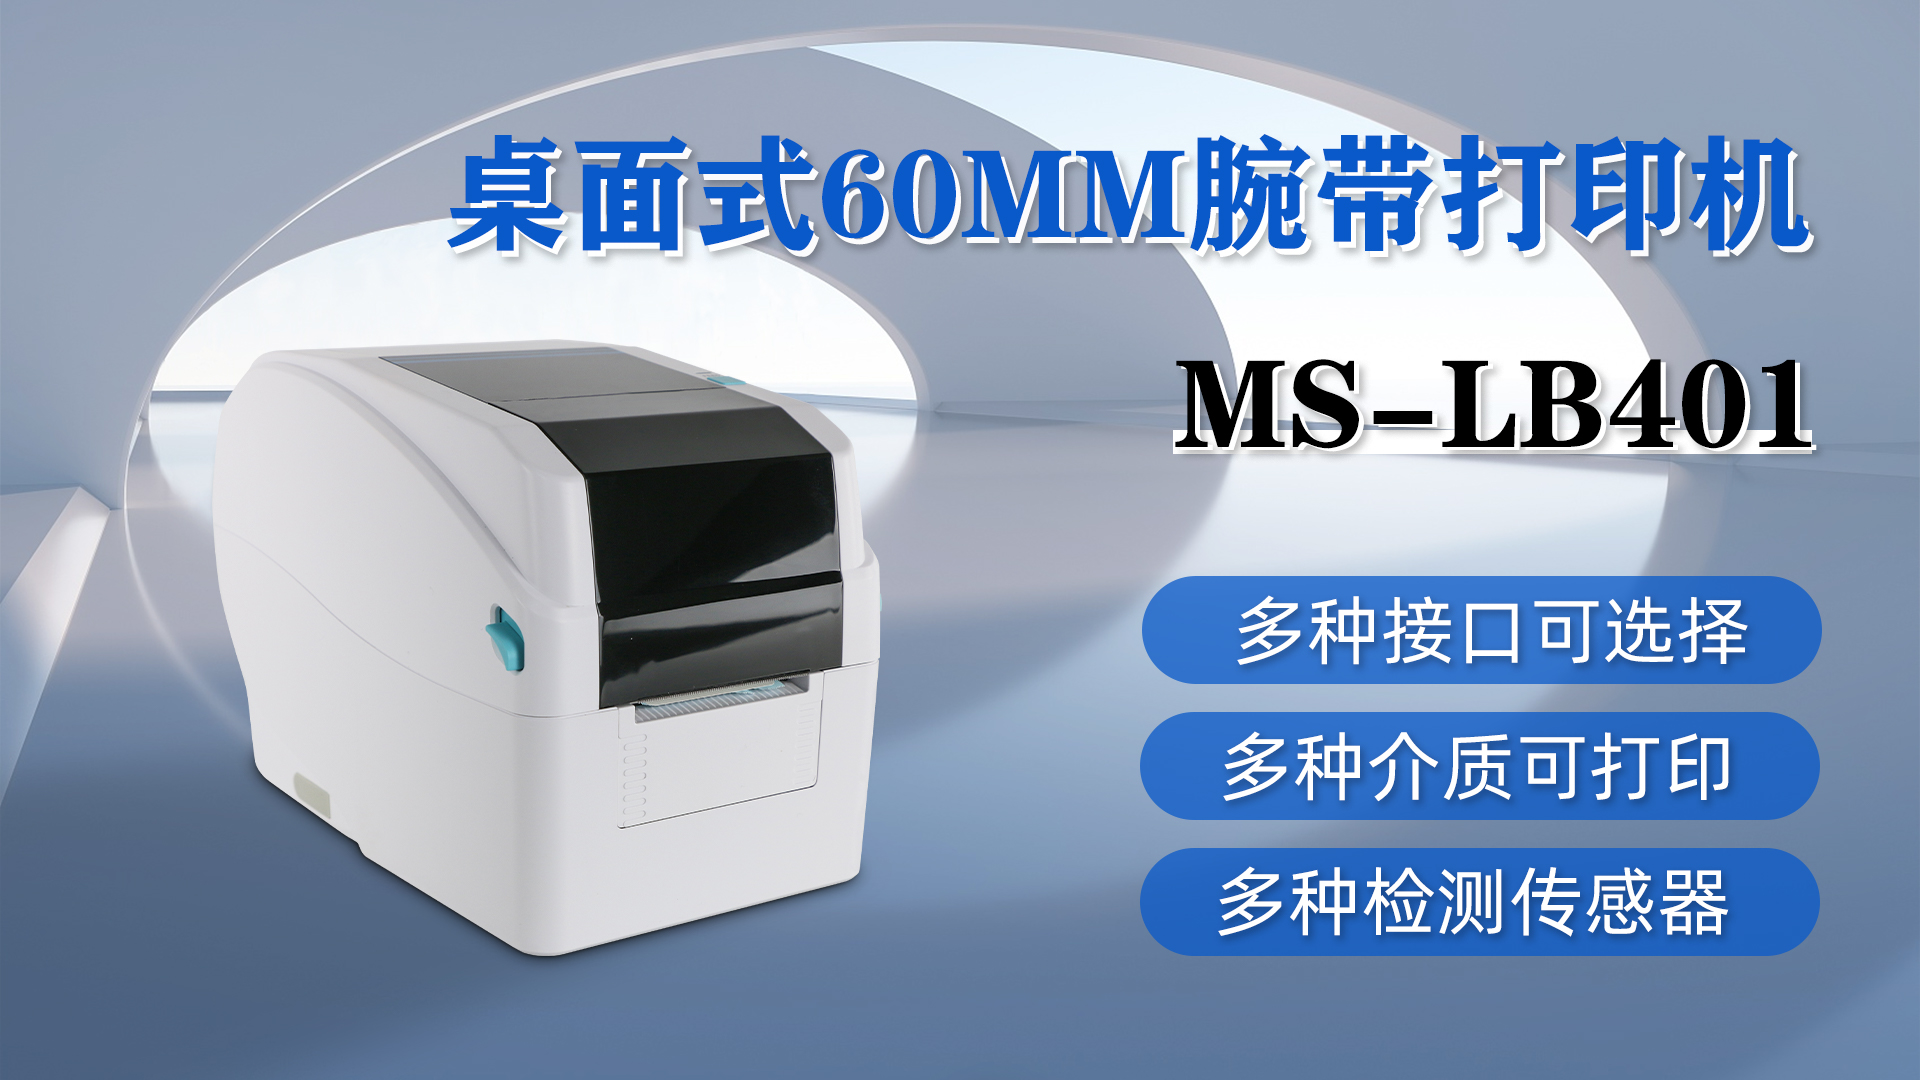 MS-LB401桌面式腕带打印，具有多种接口、介质和检测传感器可选择